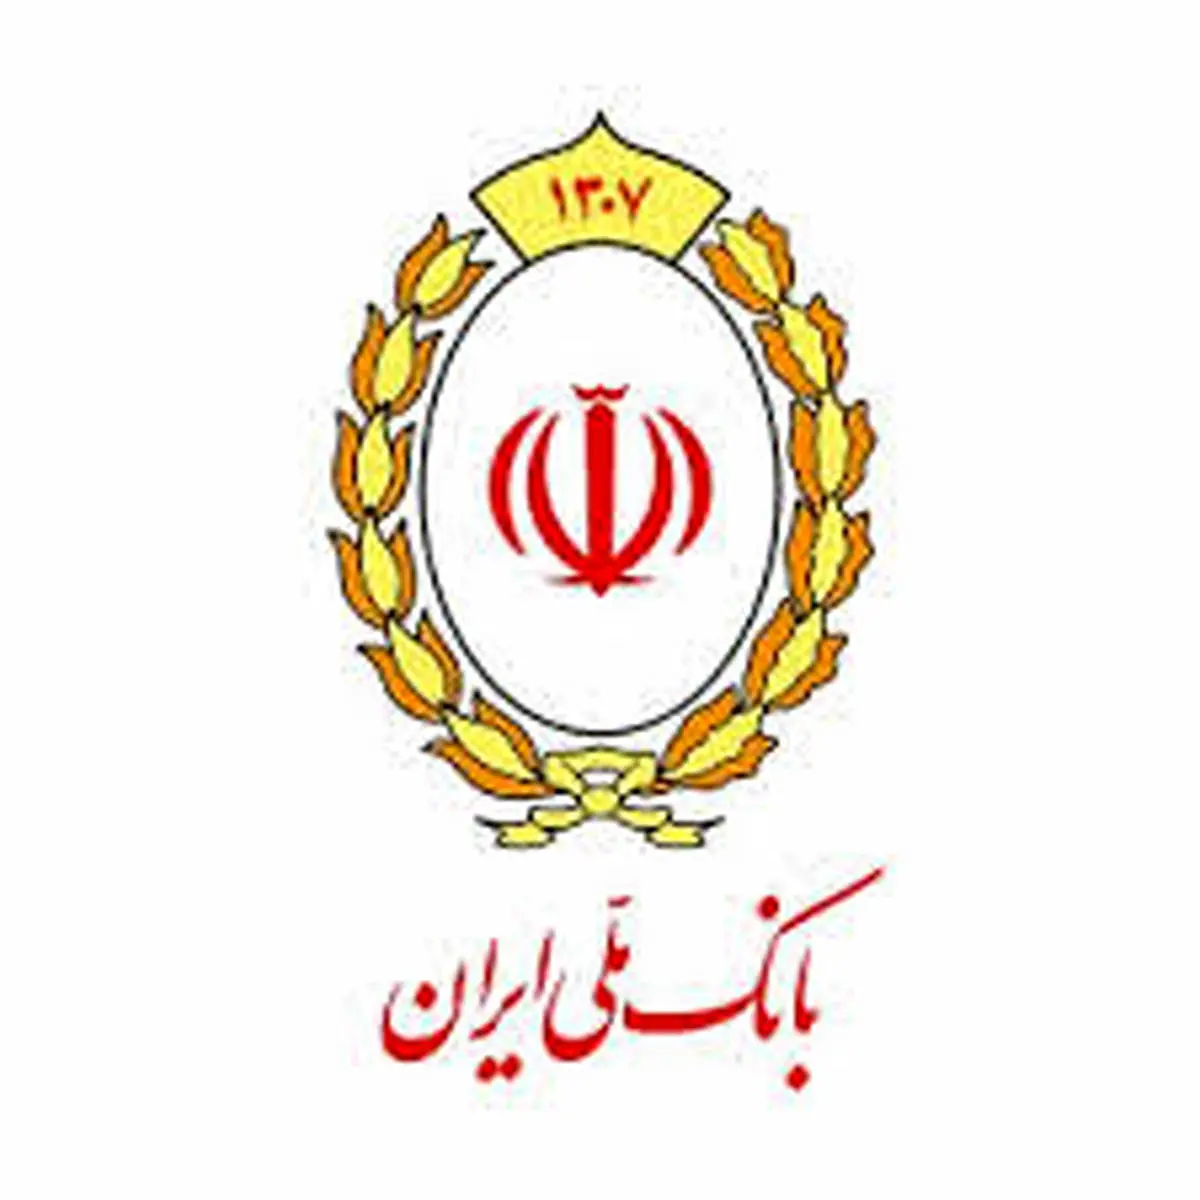 اعلام نرخ حق الوکاله بانک ملی ایران در سال 1400

